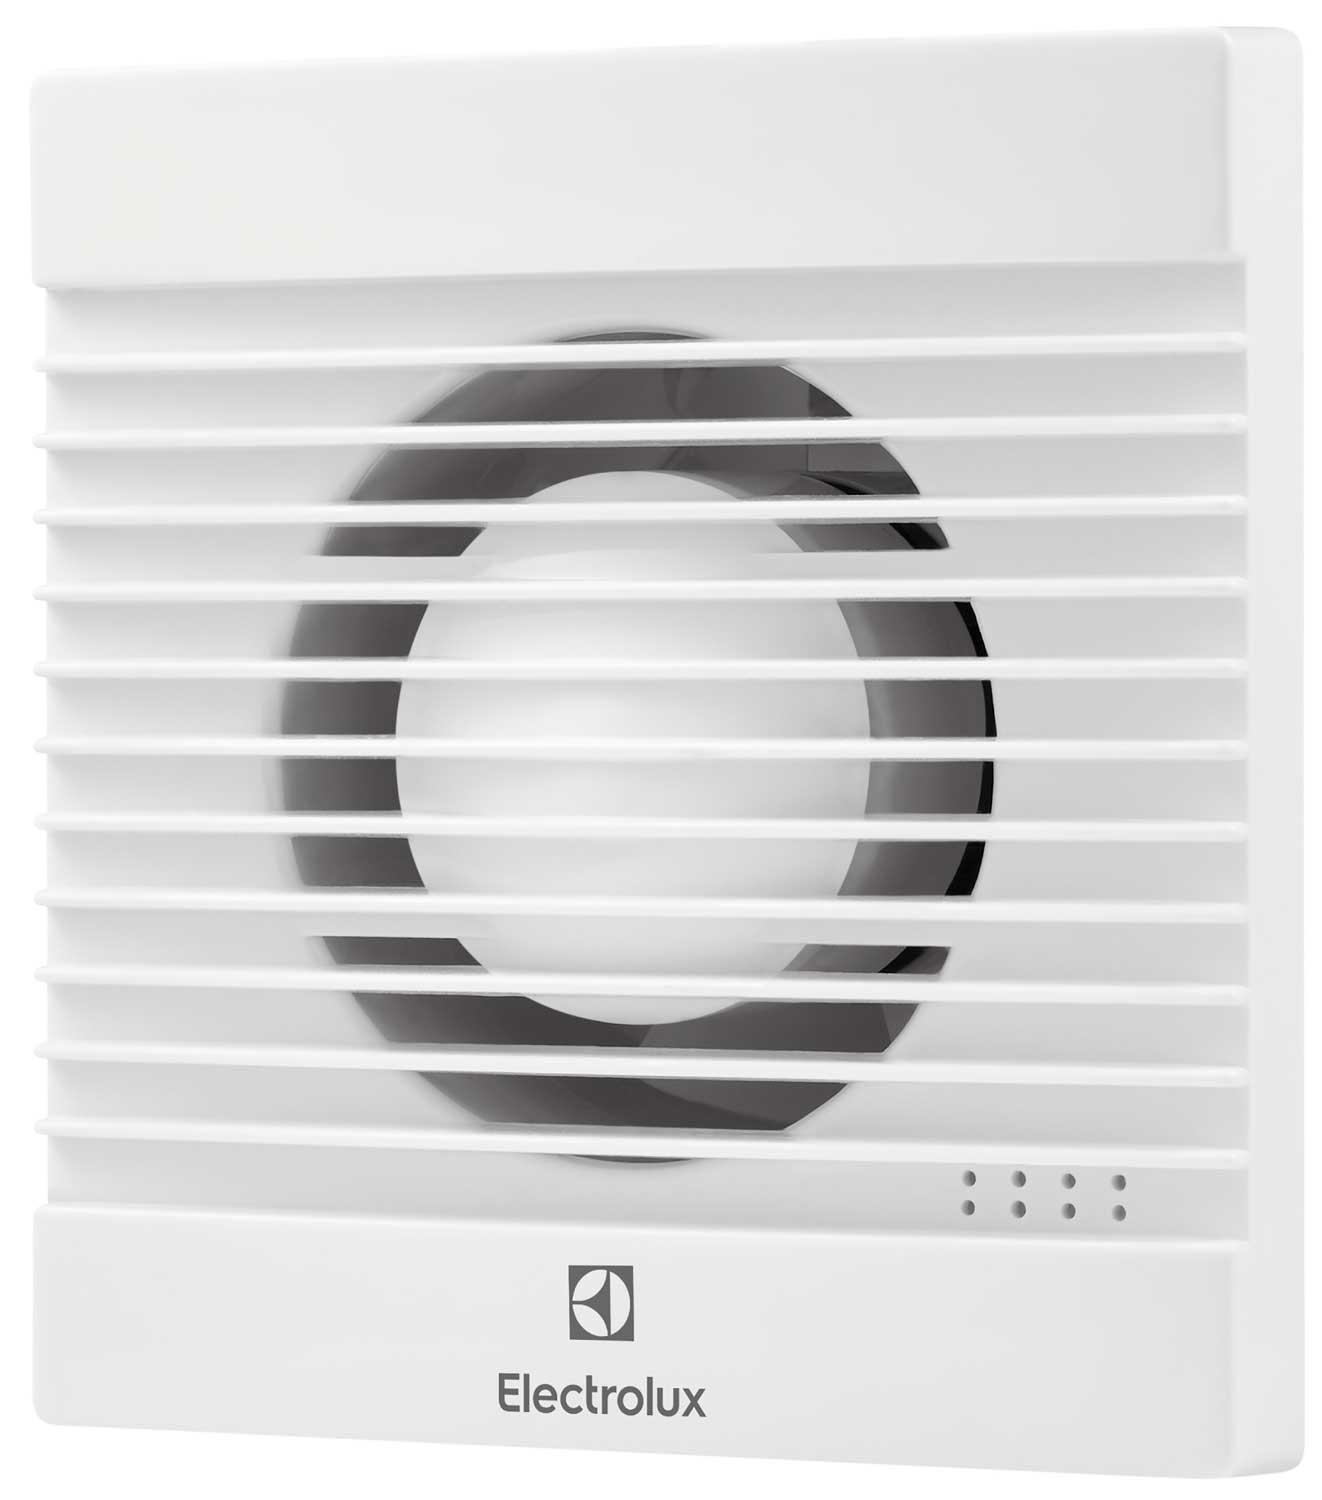 Вентилятор вытяжной Electrolux Basic EAFB-150 вытяжной вентилятор electrolux basic eafb 150 нс 1126788 белый